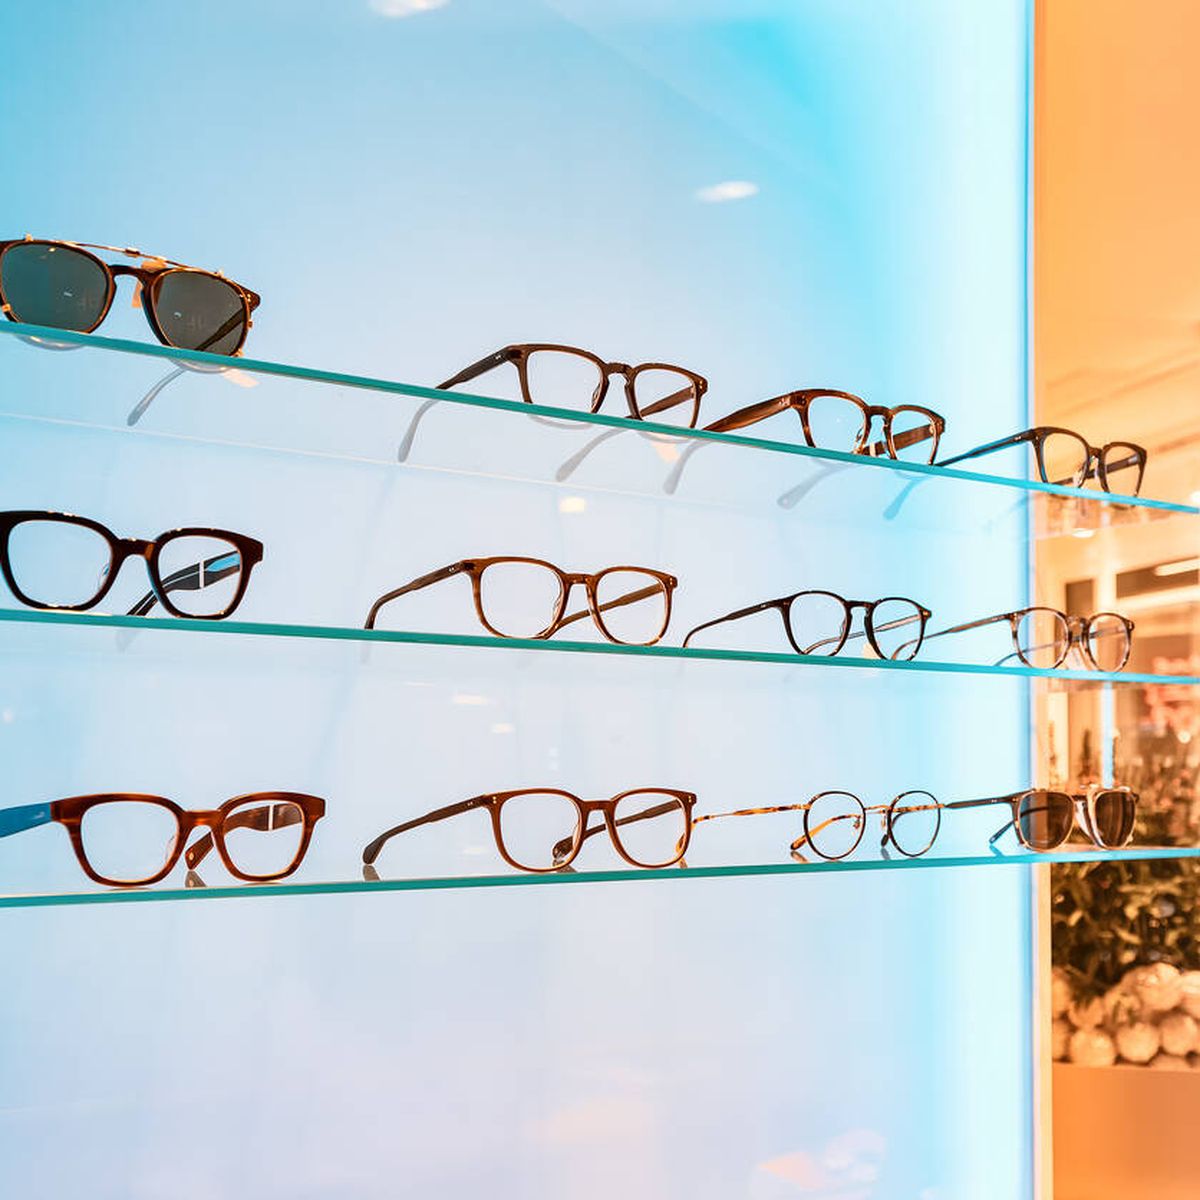 Probamos unas gafas con filtro para la luz azul: ¿Son realmente útiles o  solo una moda?